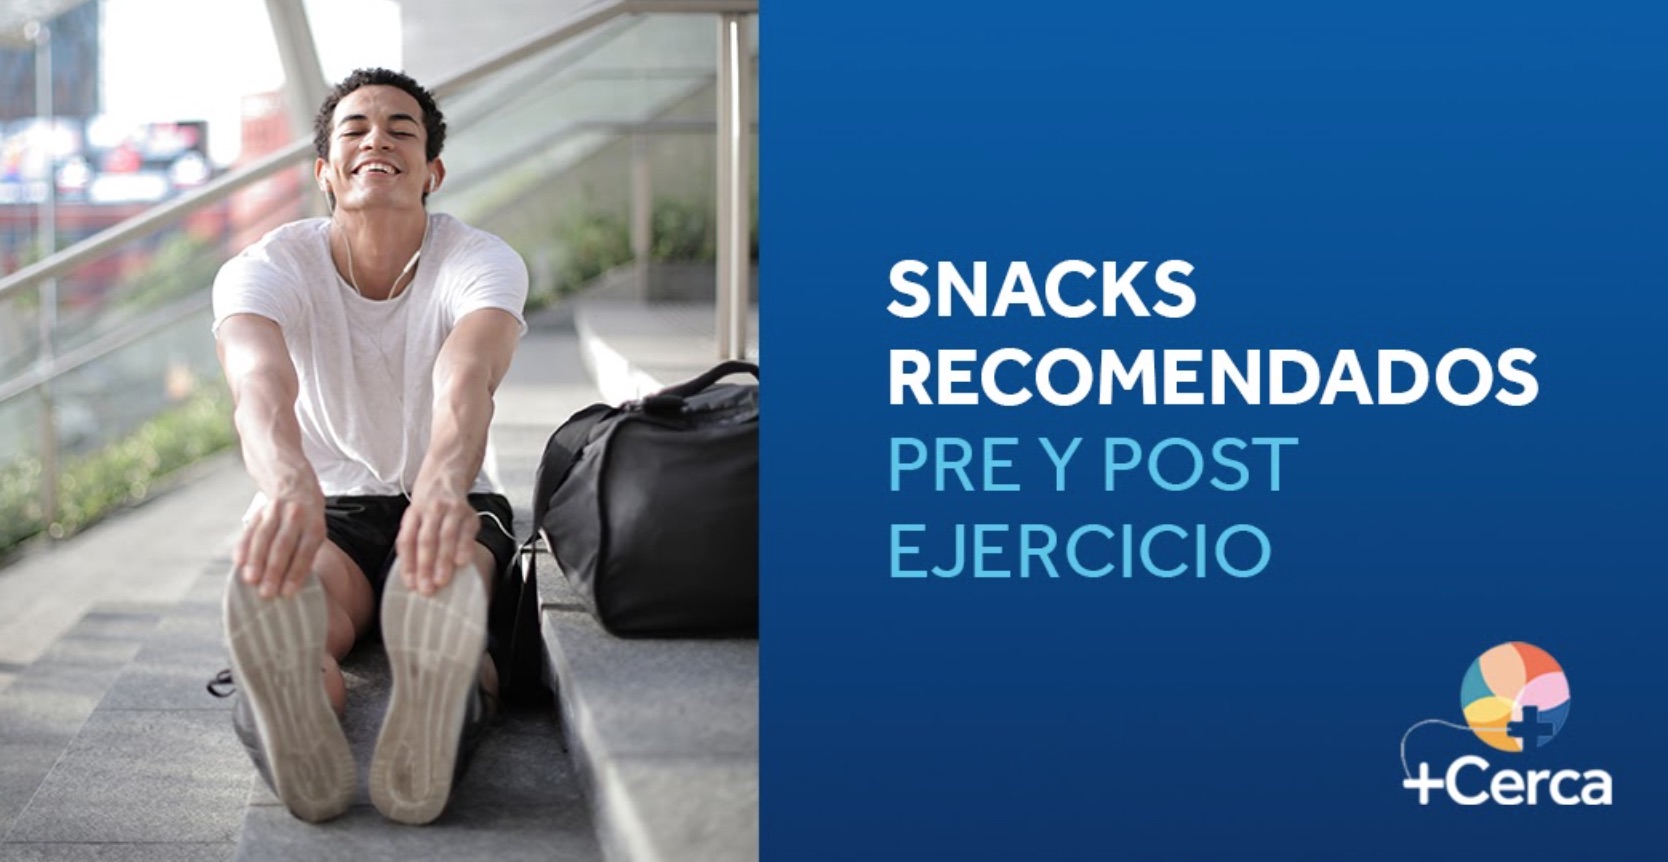 Snacks recomendados pre y post ejercicio